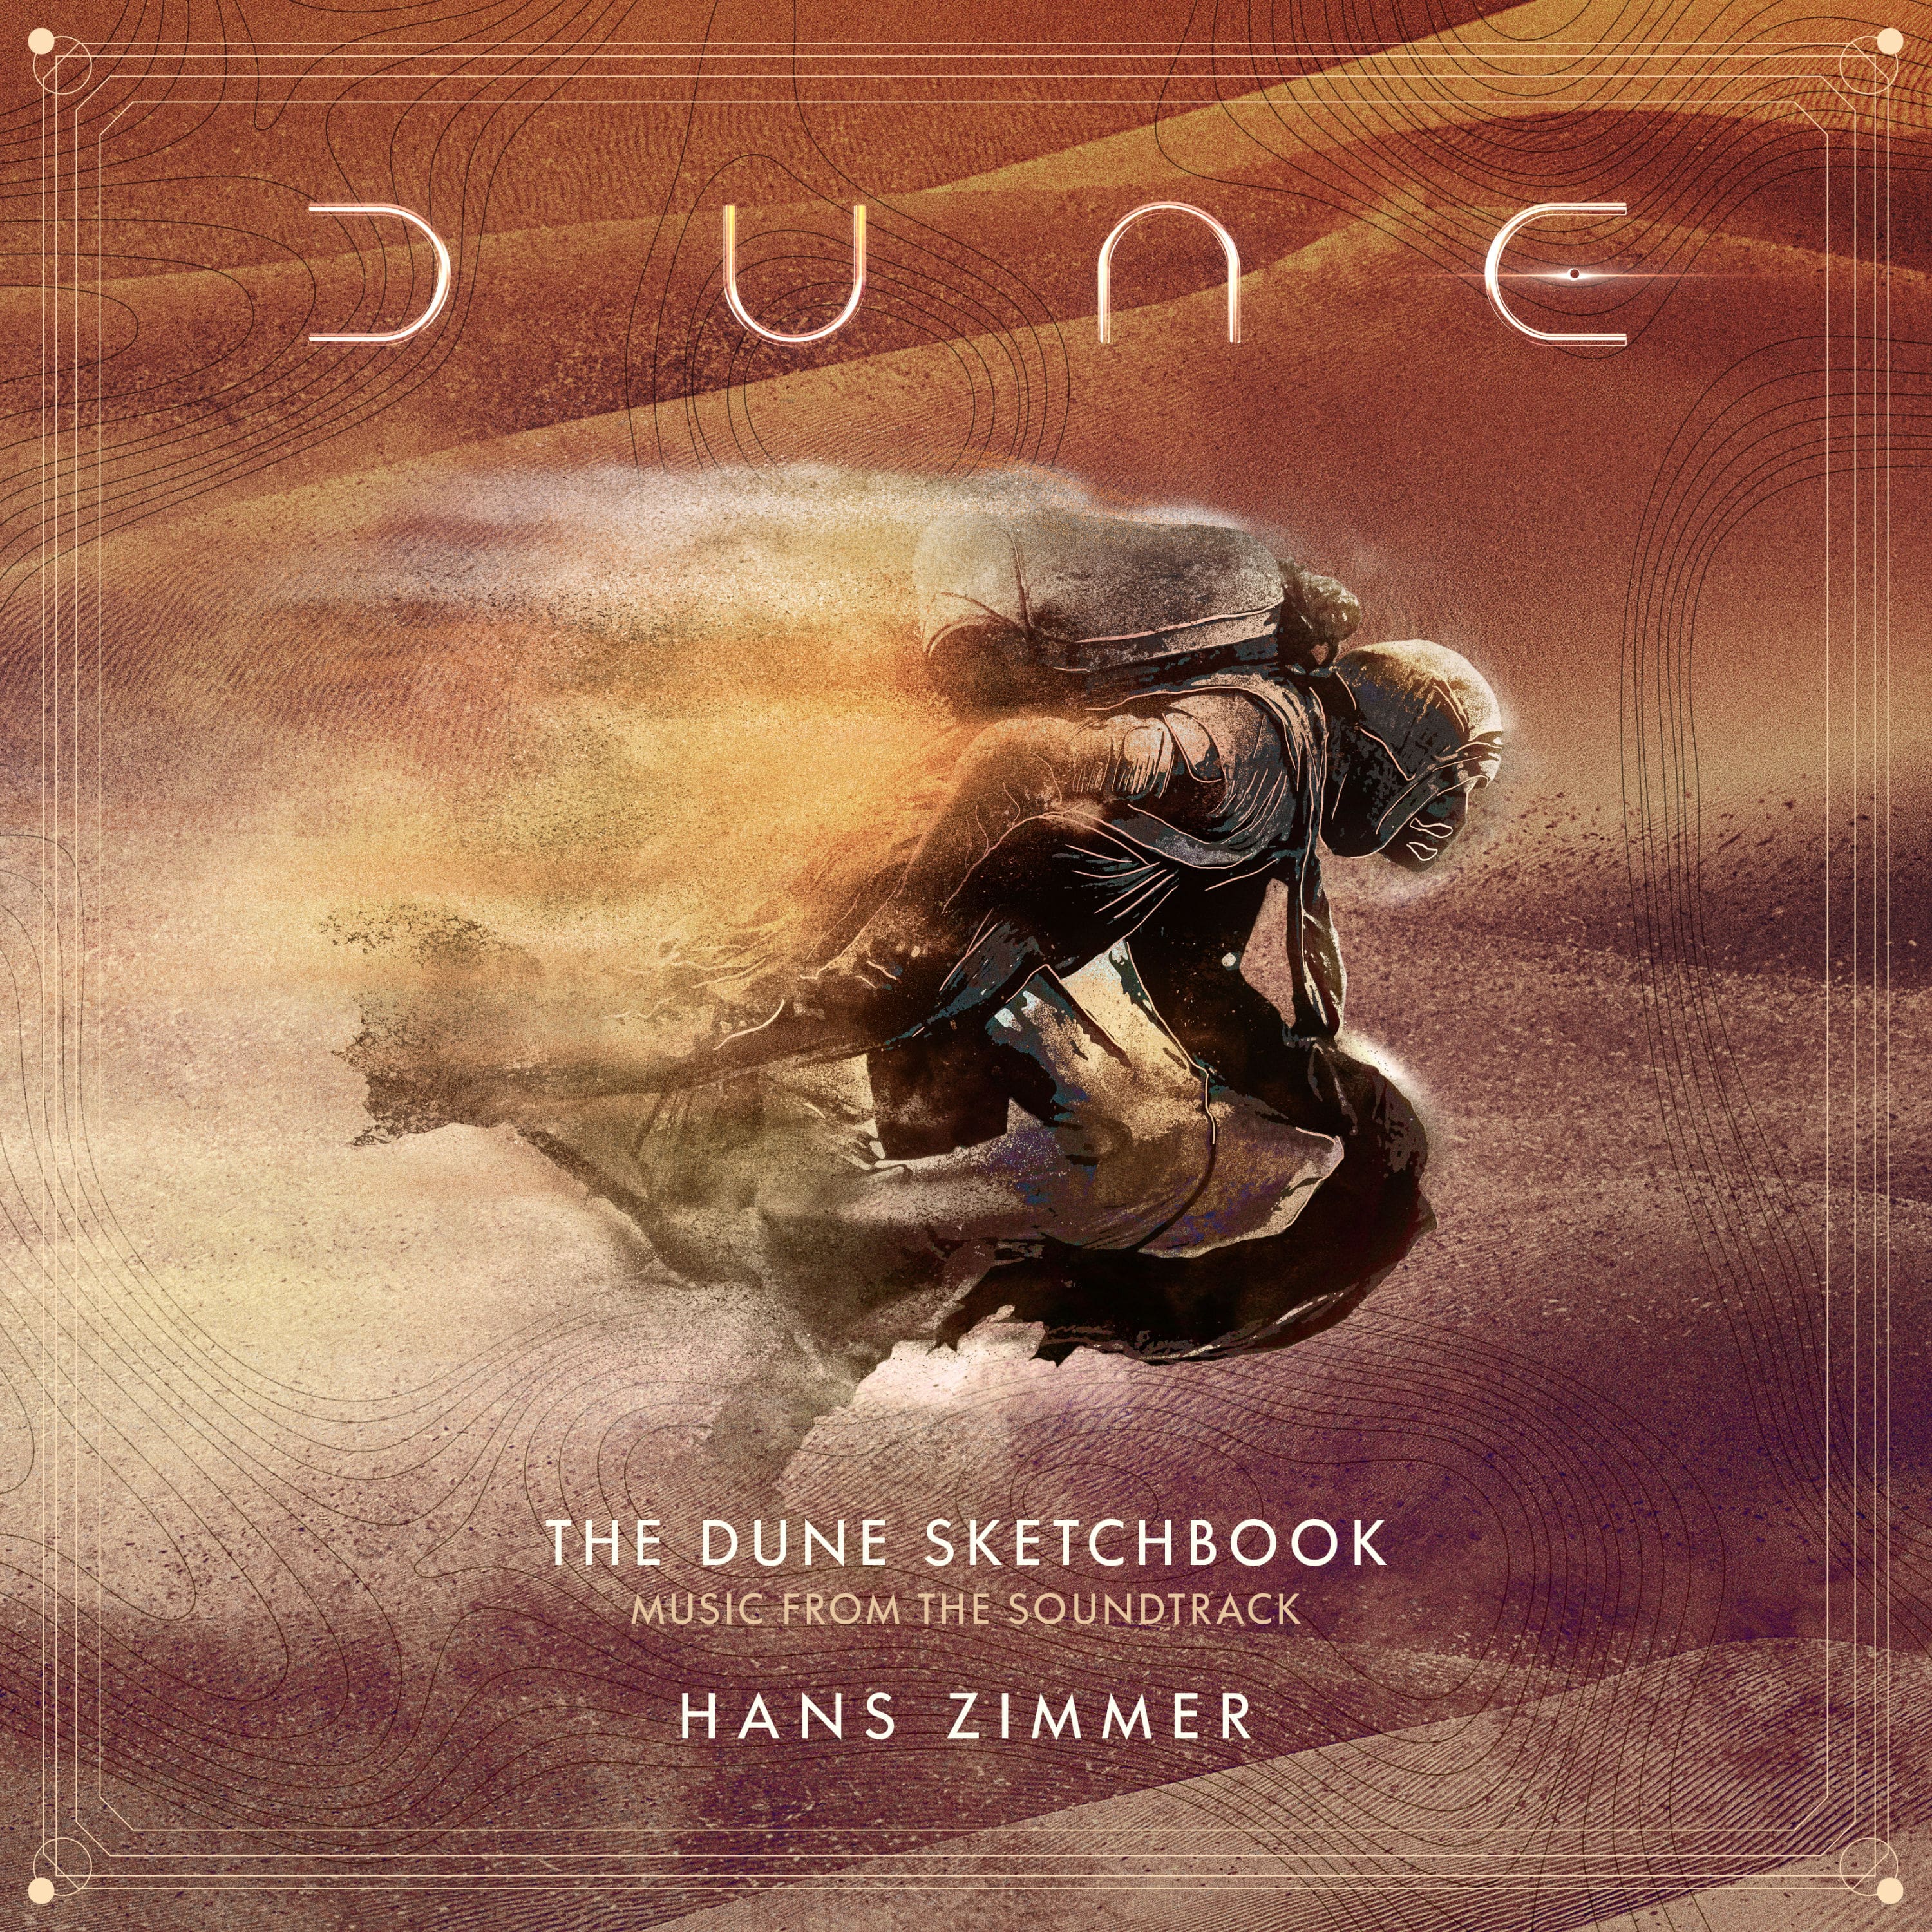 Hans Zimmer – The Dune Sketchbook